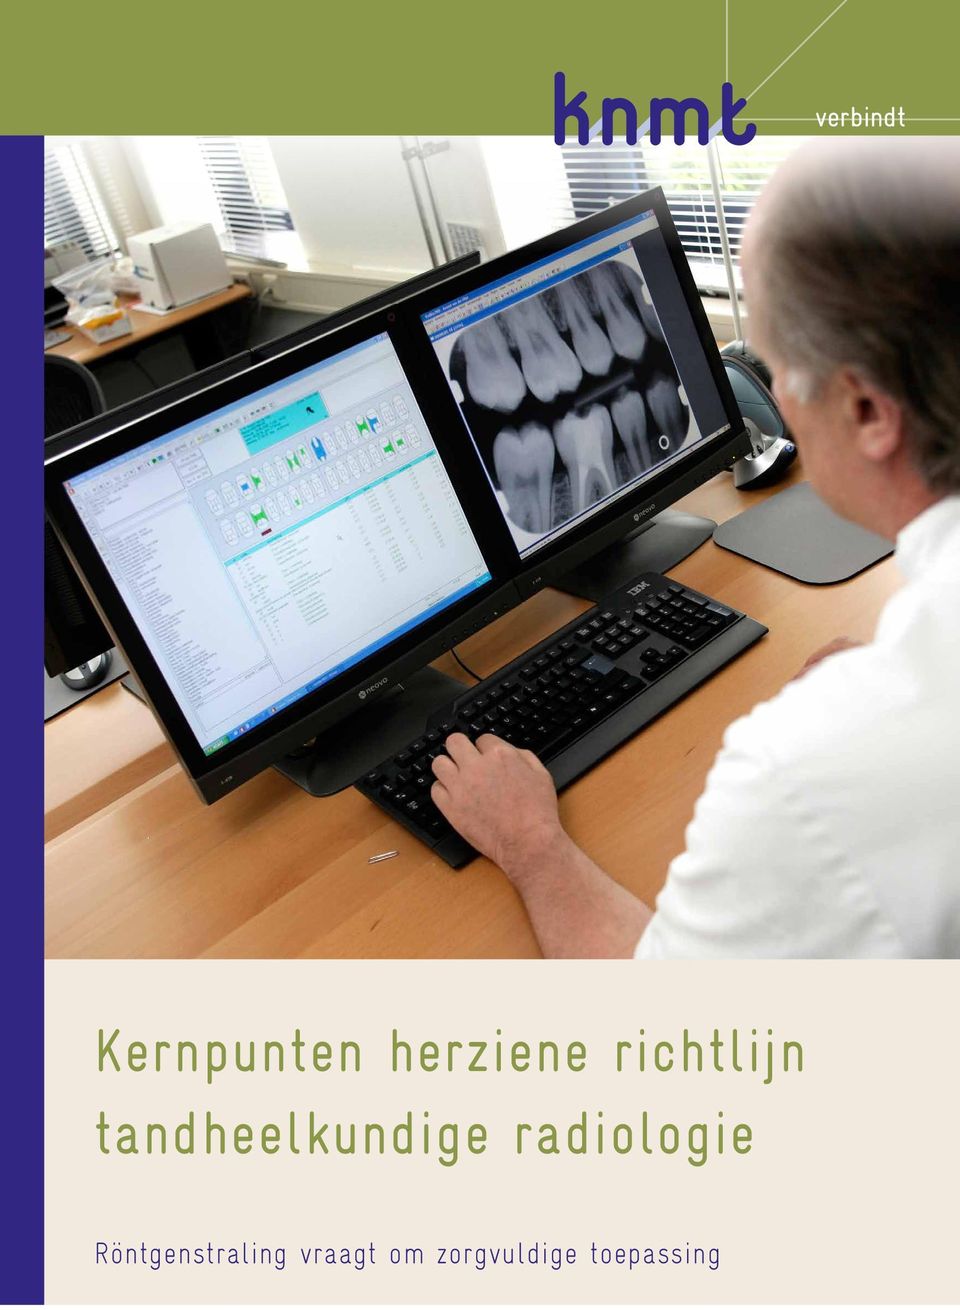 radiologie Röntgenstraling